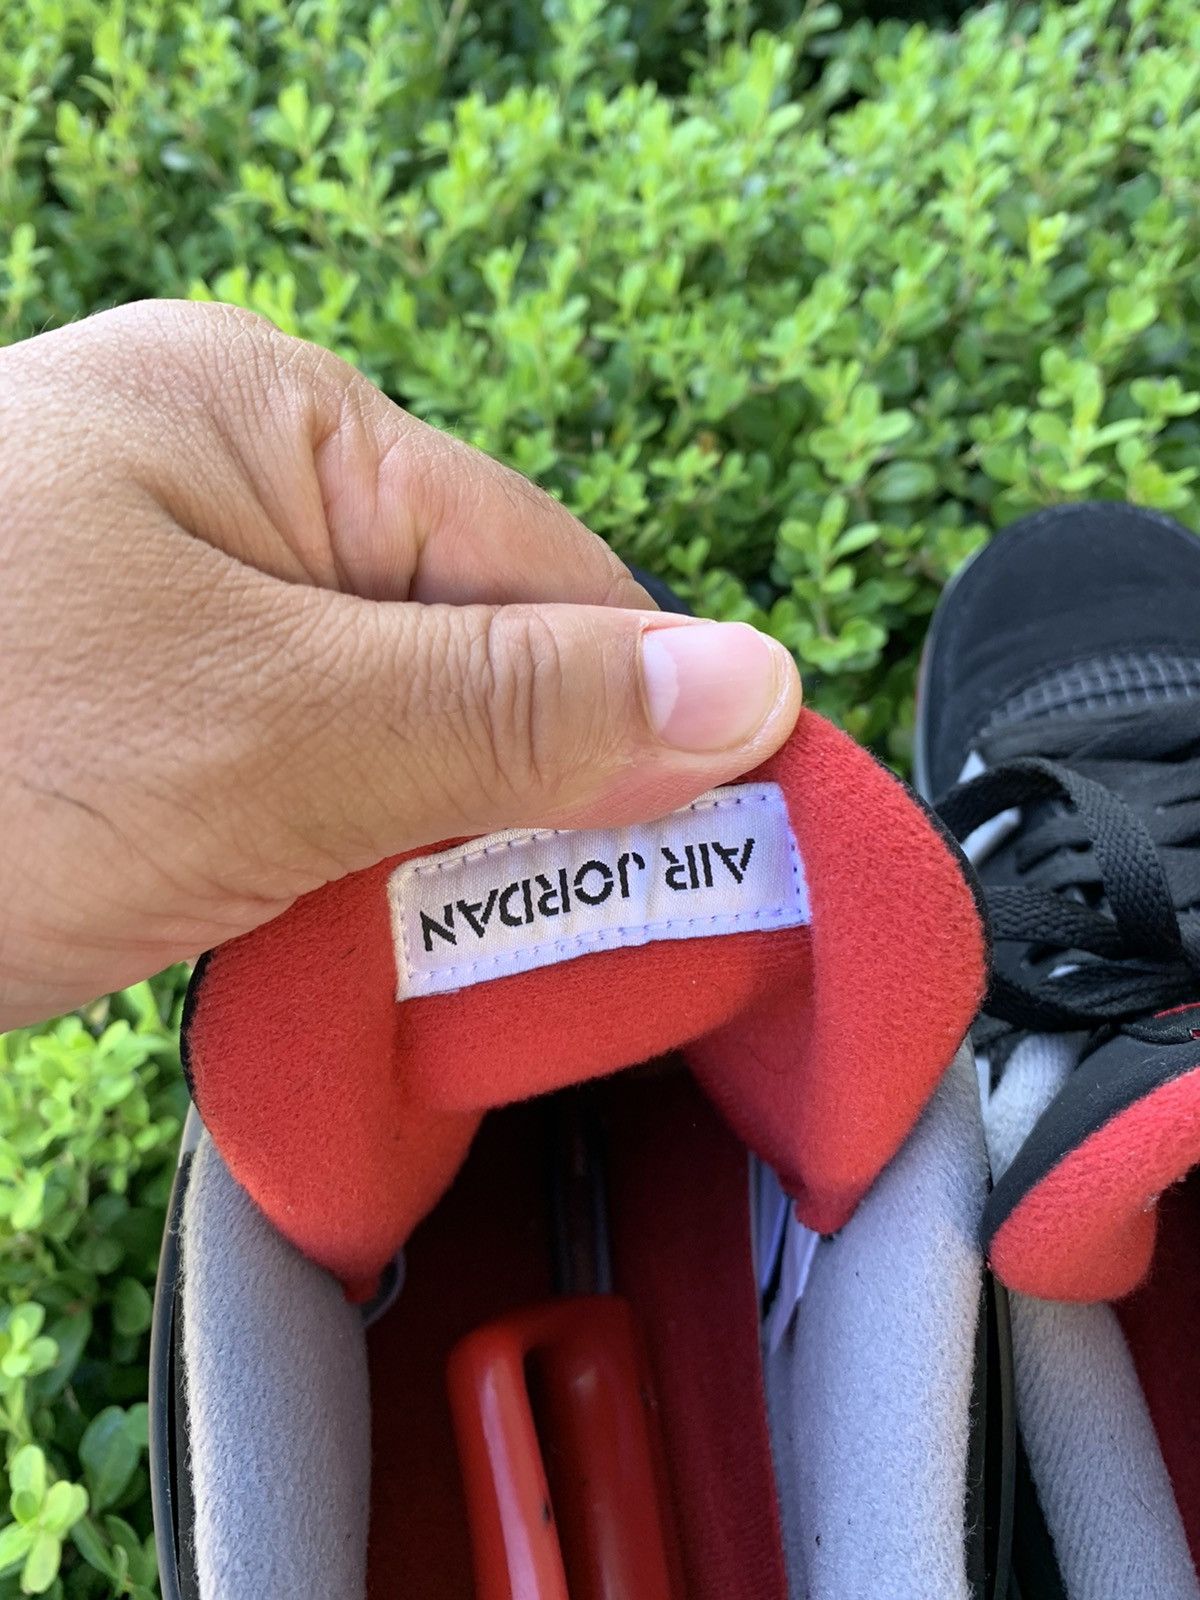 Nike Air Jordan 4 Retro OG 2019 Bred 2019 Size US 13 / EU 46 - 9 Thumbnail